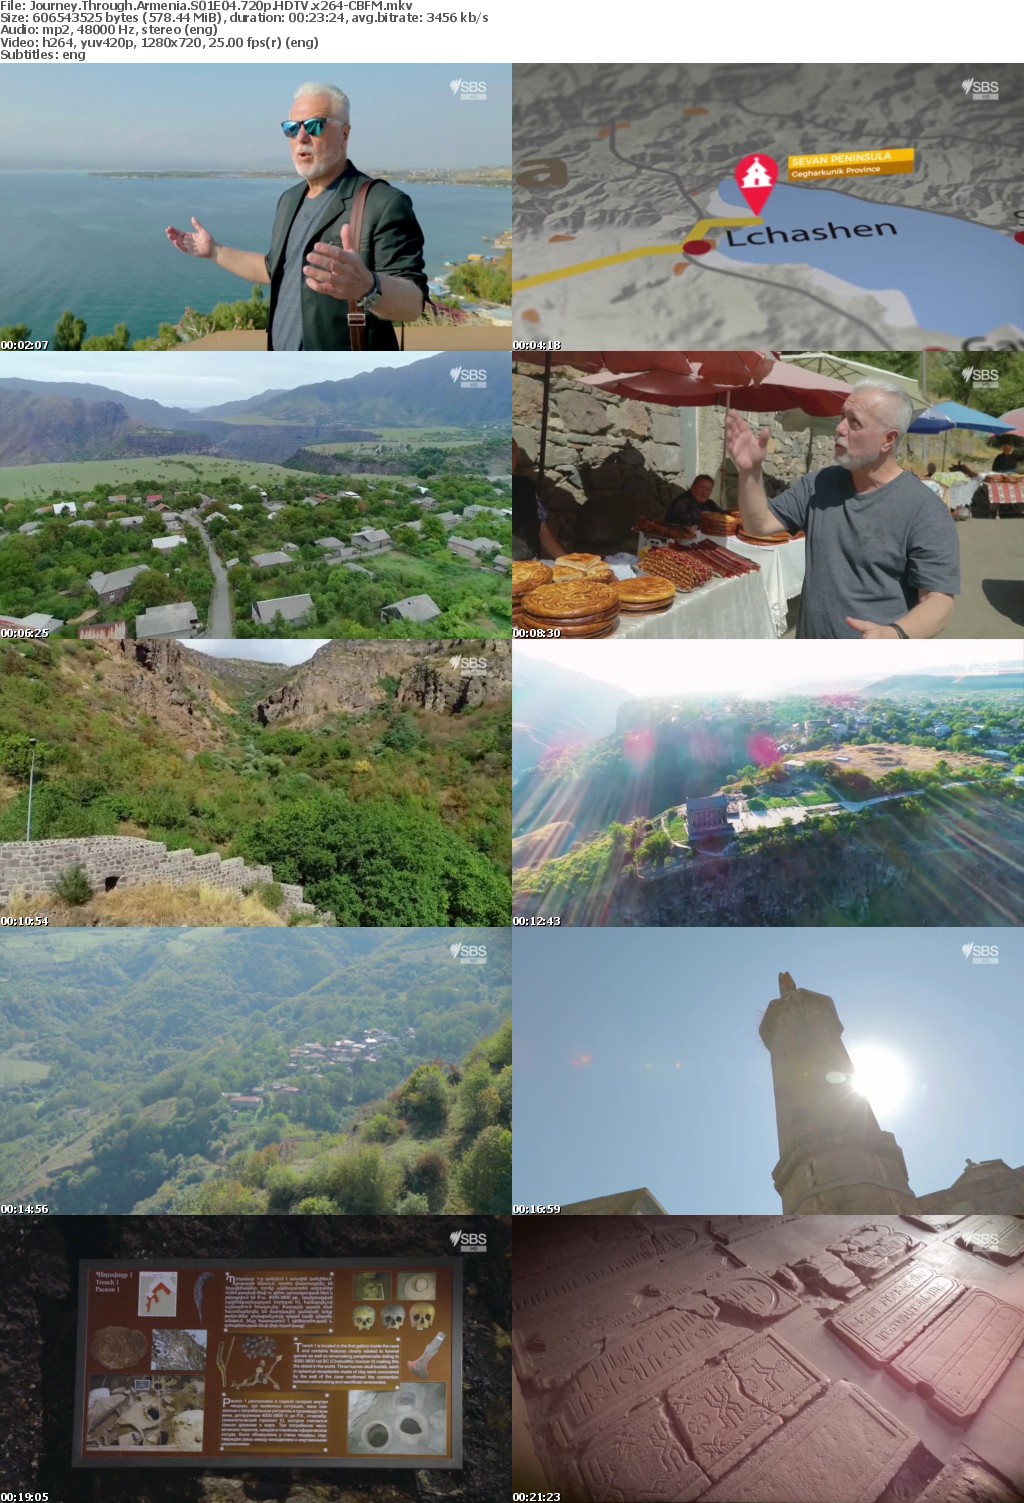 Journey Through Armenia S01E04 720p HDTV x264-CBFM